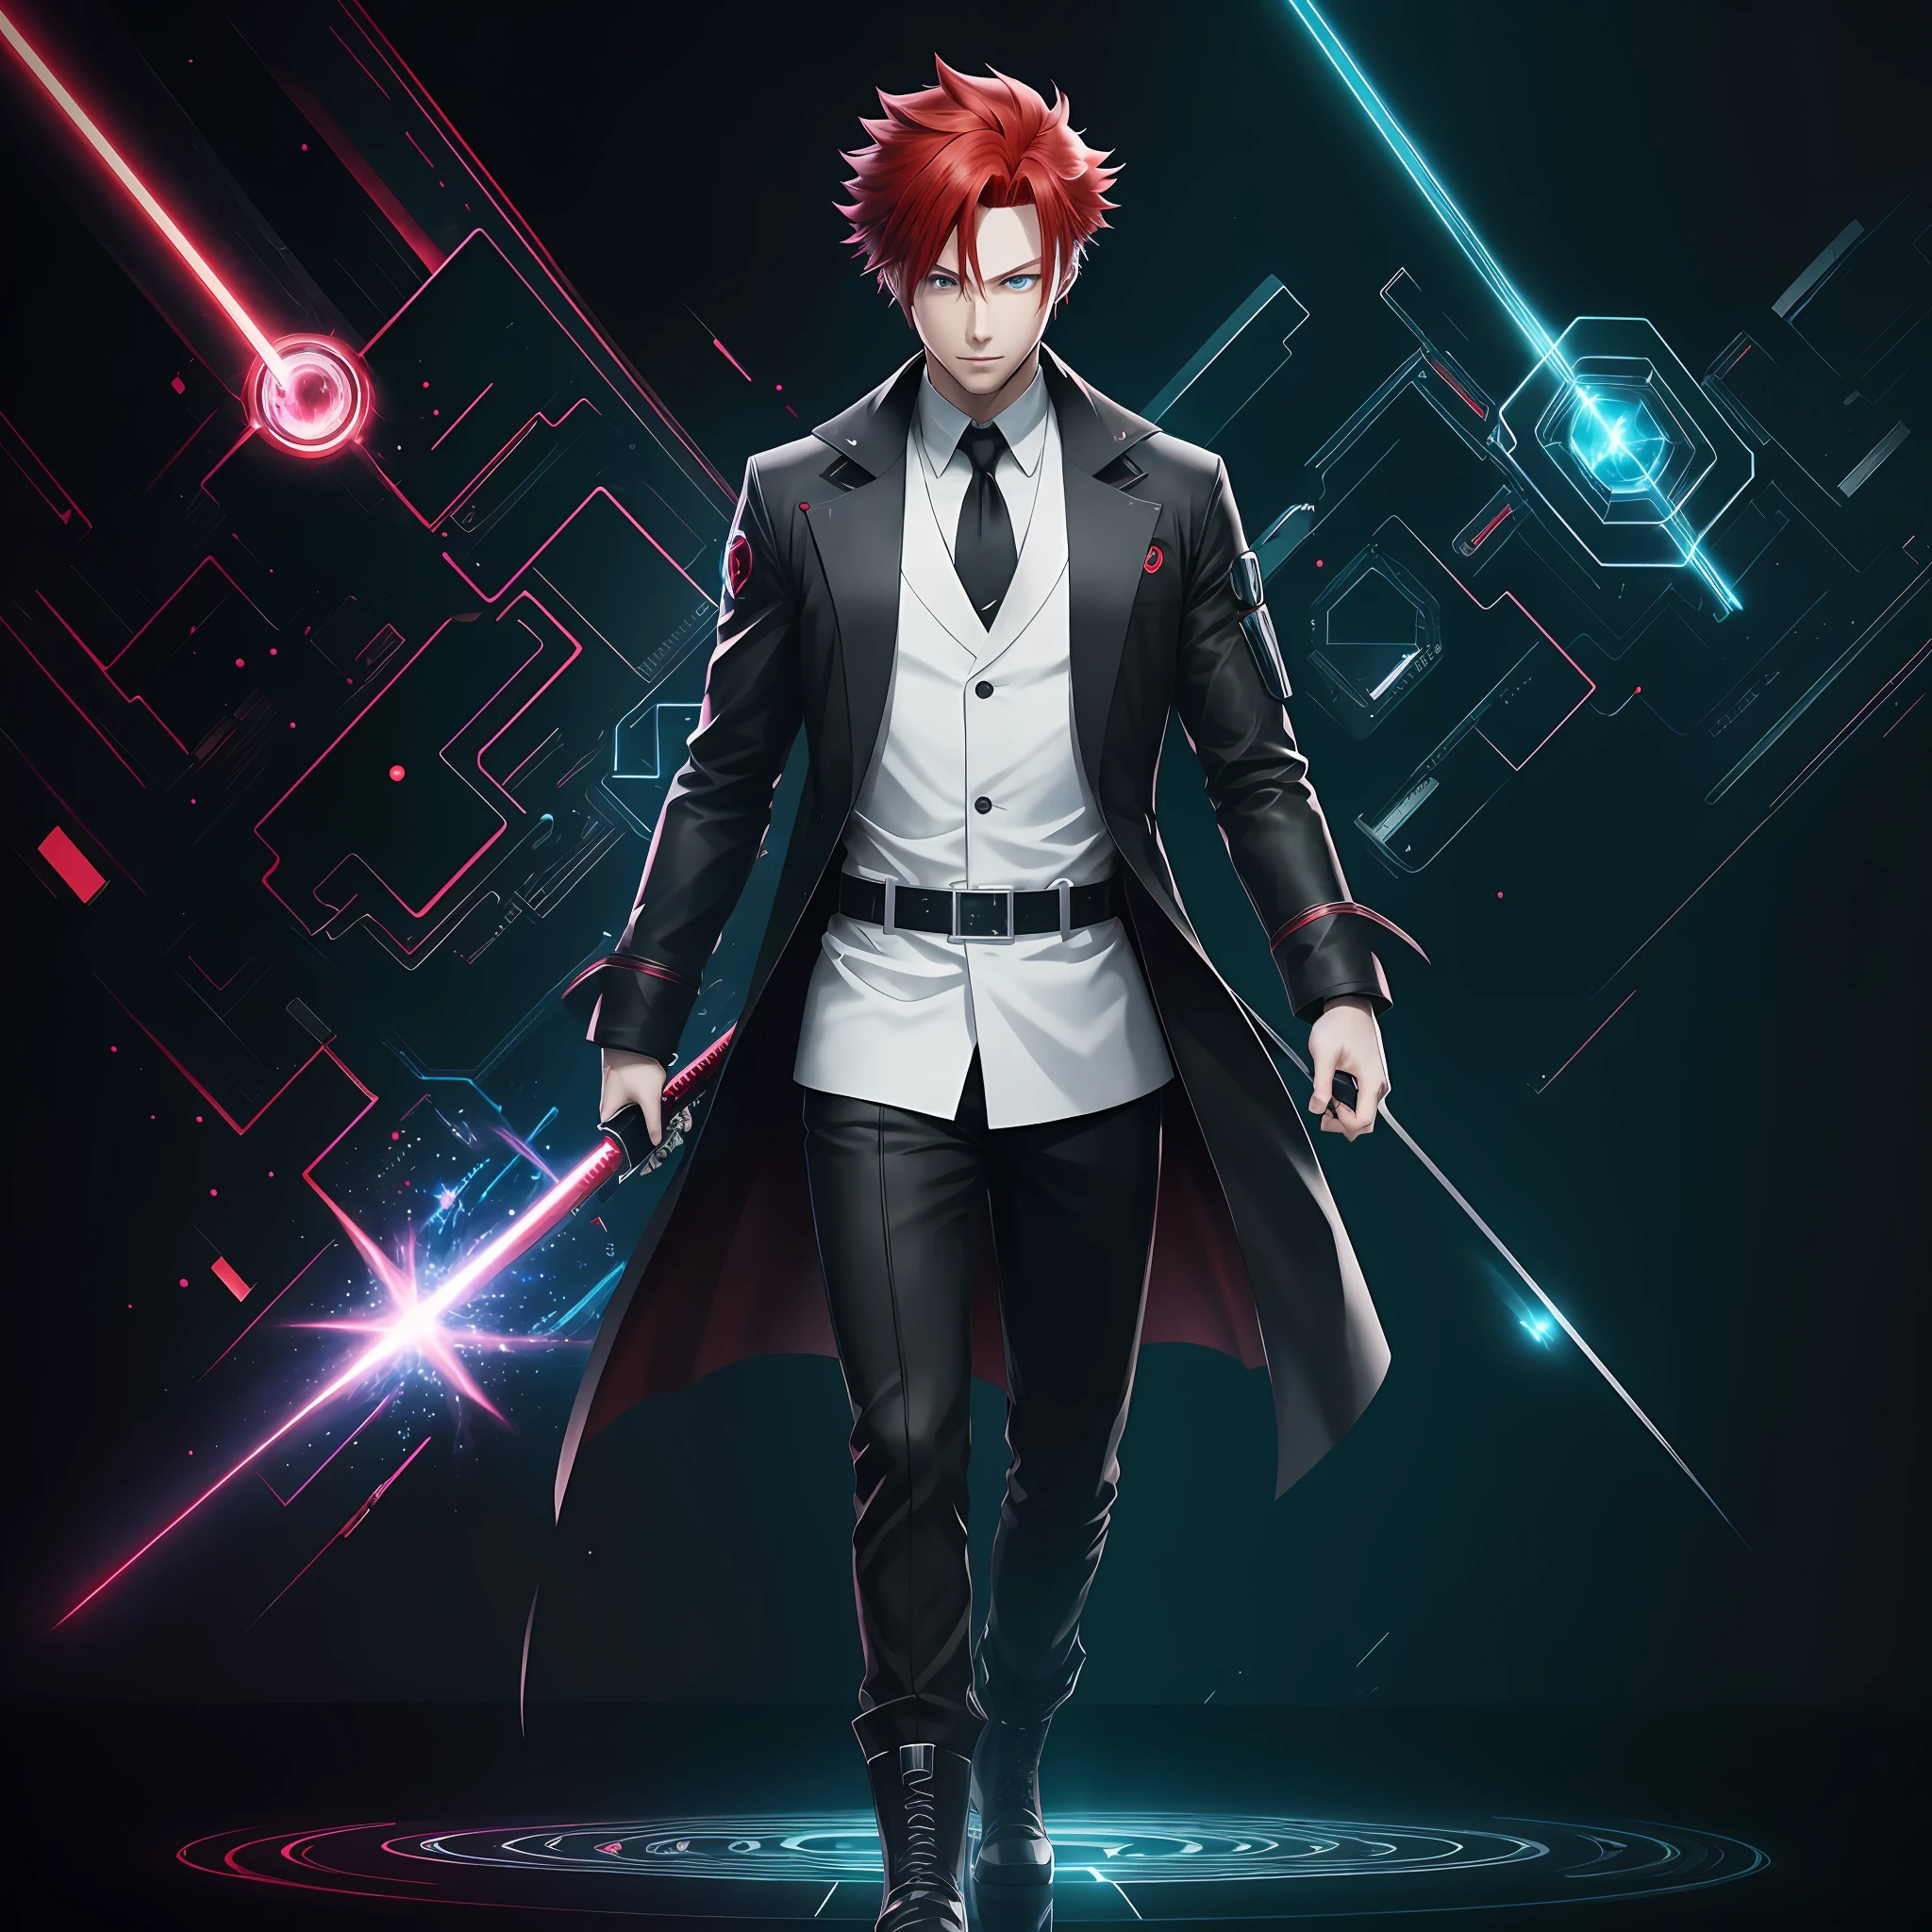 1 personaje masculino de anime, rojo hair, wearing high-tech negro gloves,  alta tecnología, heterocromía - SeaArt AI